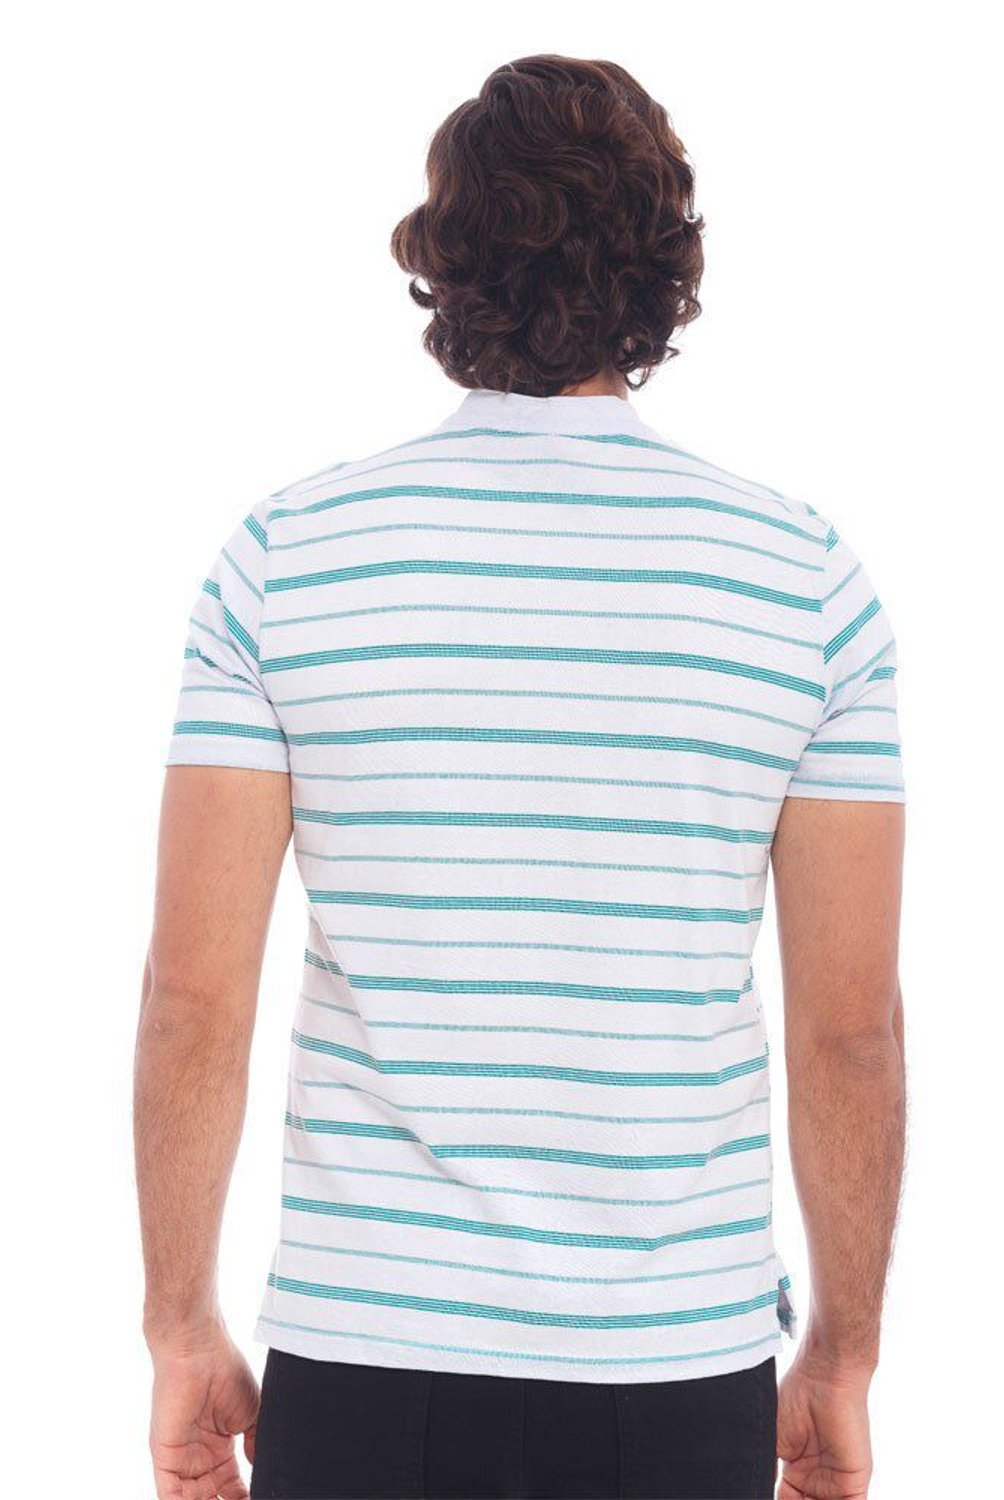 Bocared - Camiseta para hombre tipo polo bocared